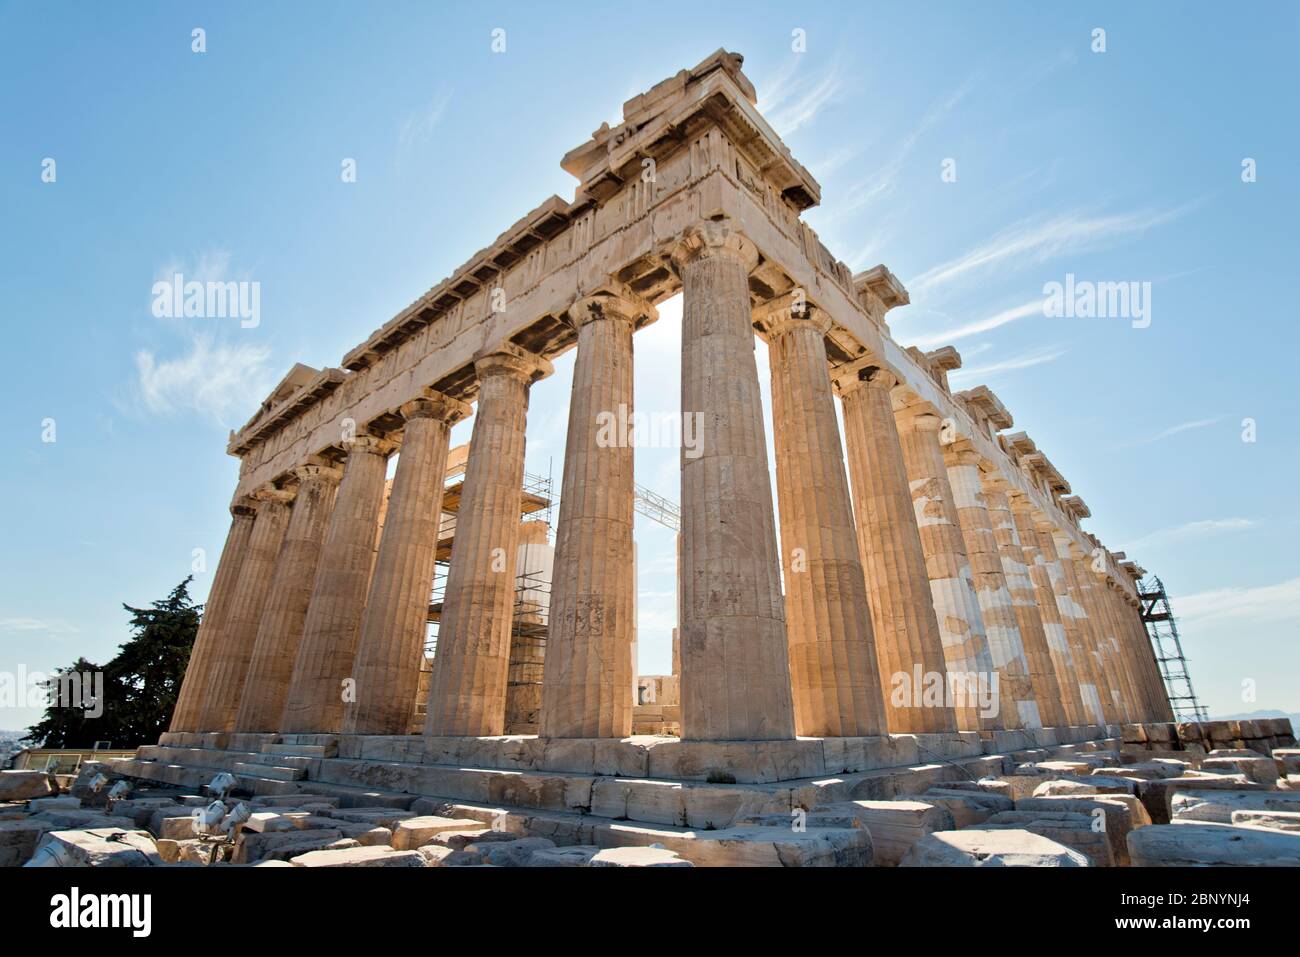 The Parthenon. Acropolis of Athens, Greece Stock Photo